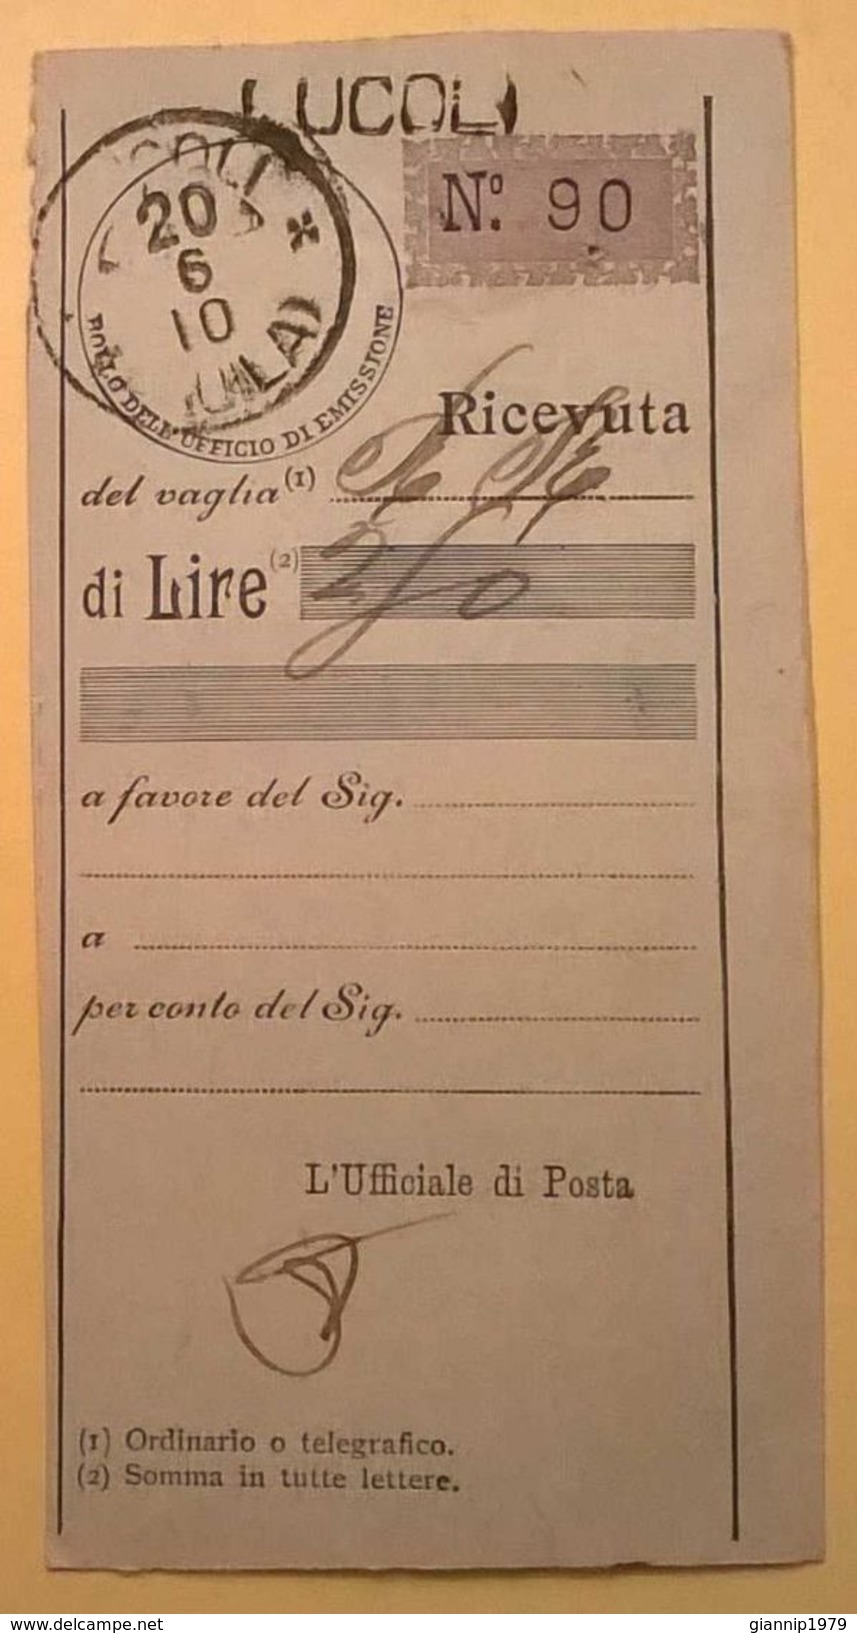 VAGLIA POSTALE RICEVUTA LUCOLI 1910 AQUILA - Vaglia Postale